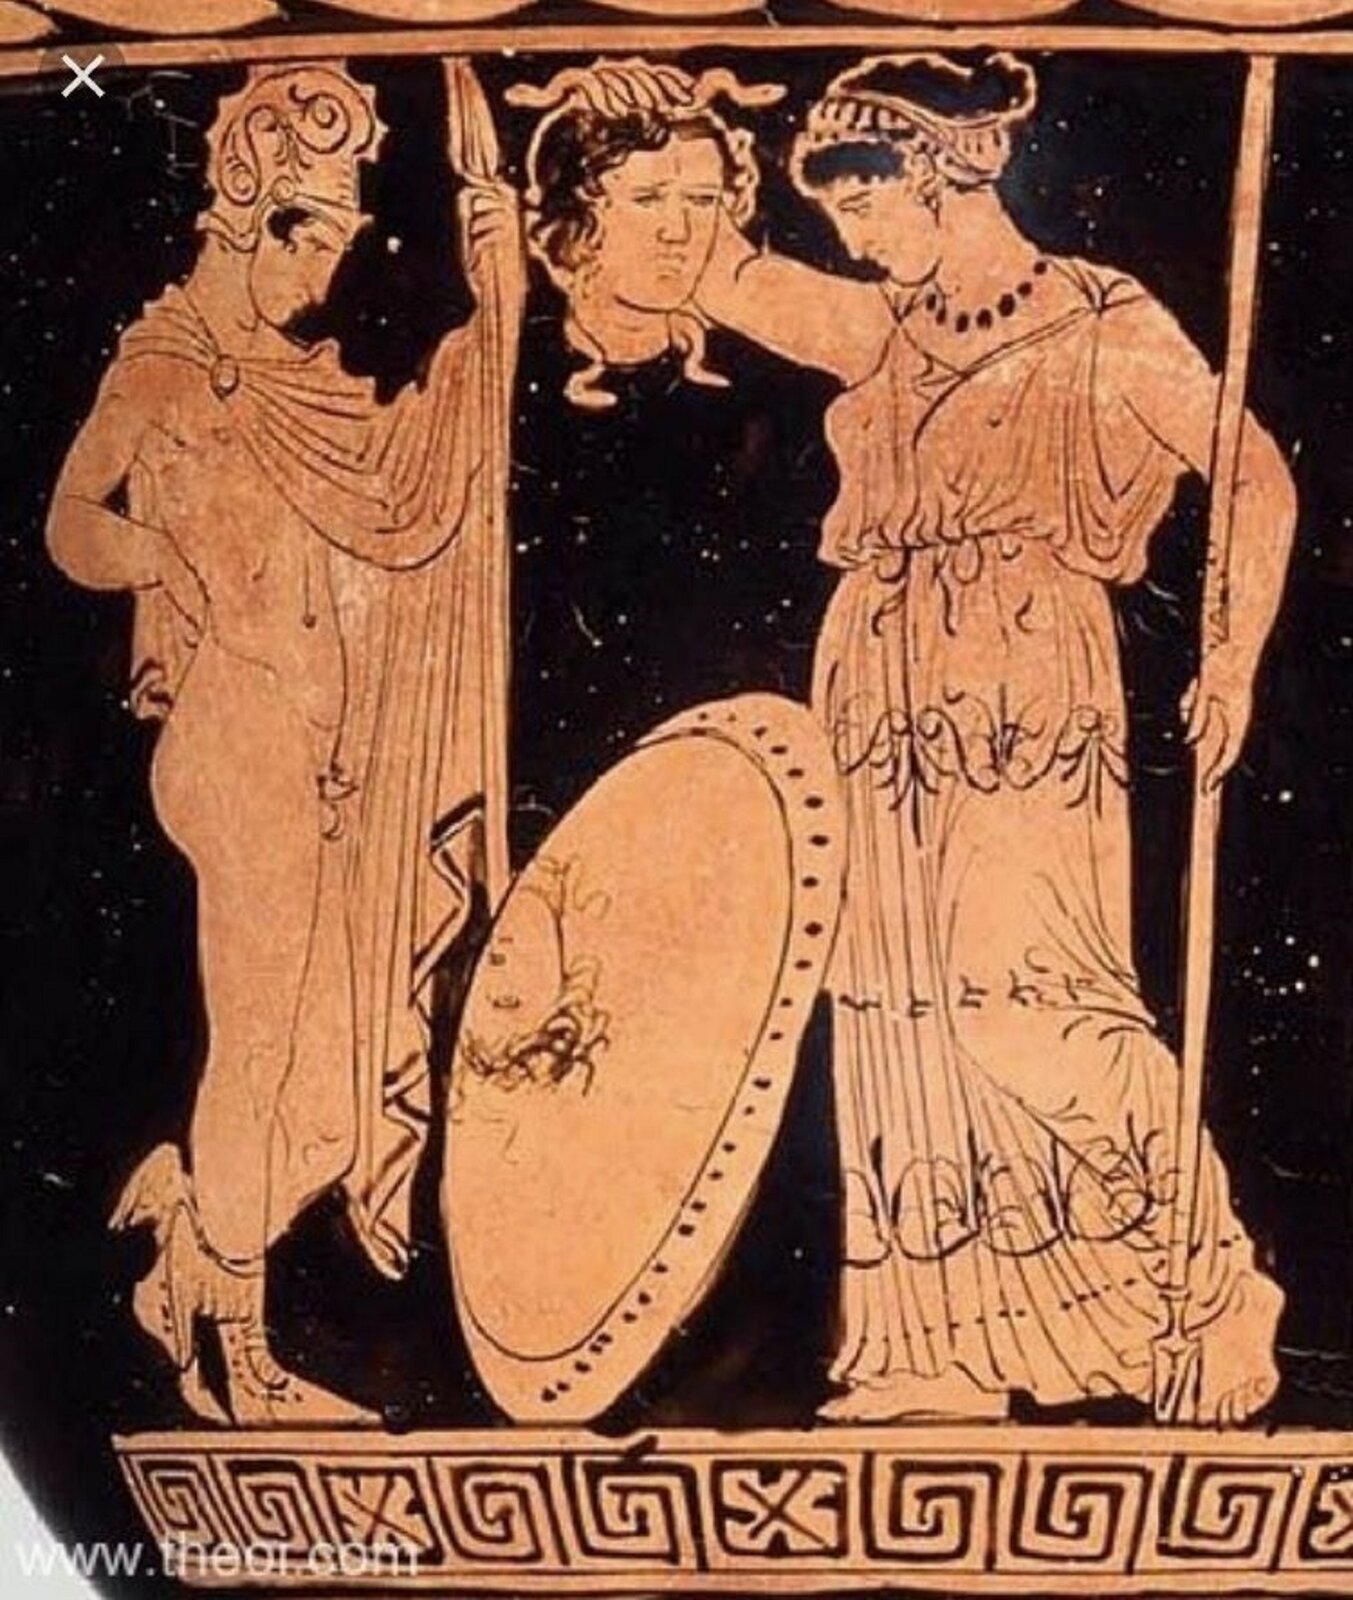 Fotografia nieznanego autora przedstawia malarstwo czerwono figurowe przedstawiające Perseusza, który przynosi głowę Meduzy Atenie. Perseusz został przedstawiony jako mężczyzna w średnim wieku, ubrany jest w hełm, oraz szatę okrywającą jego ciało. Atena to kobieta w średnim wieku, która ma czarne włosy spięte w kok, ubrana jest w długą suknię sięgającą ziemi. W jednej dłoni trzyma włócznię, a w drugiej głowę meduzy. Obok Ateny stoi jej tarcza, w której odbija się głowa meduzy. 